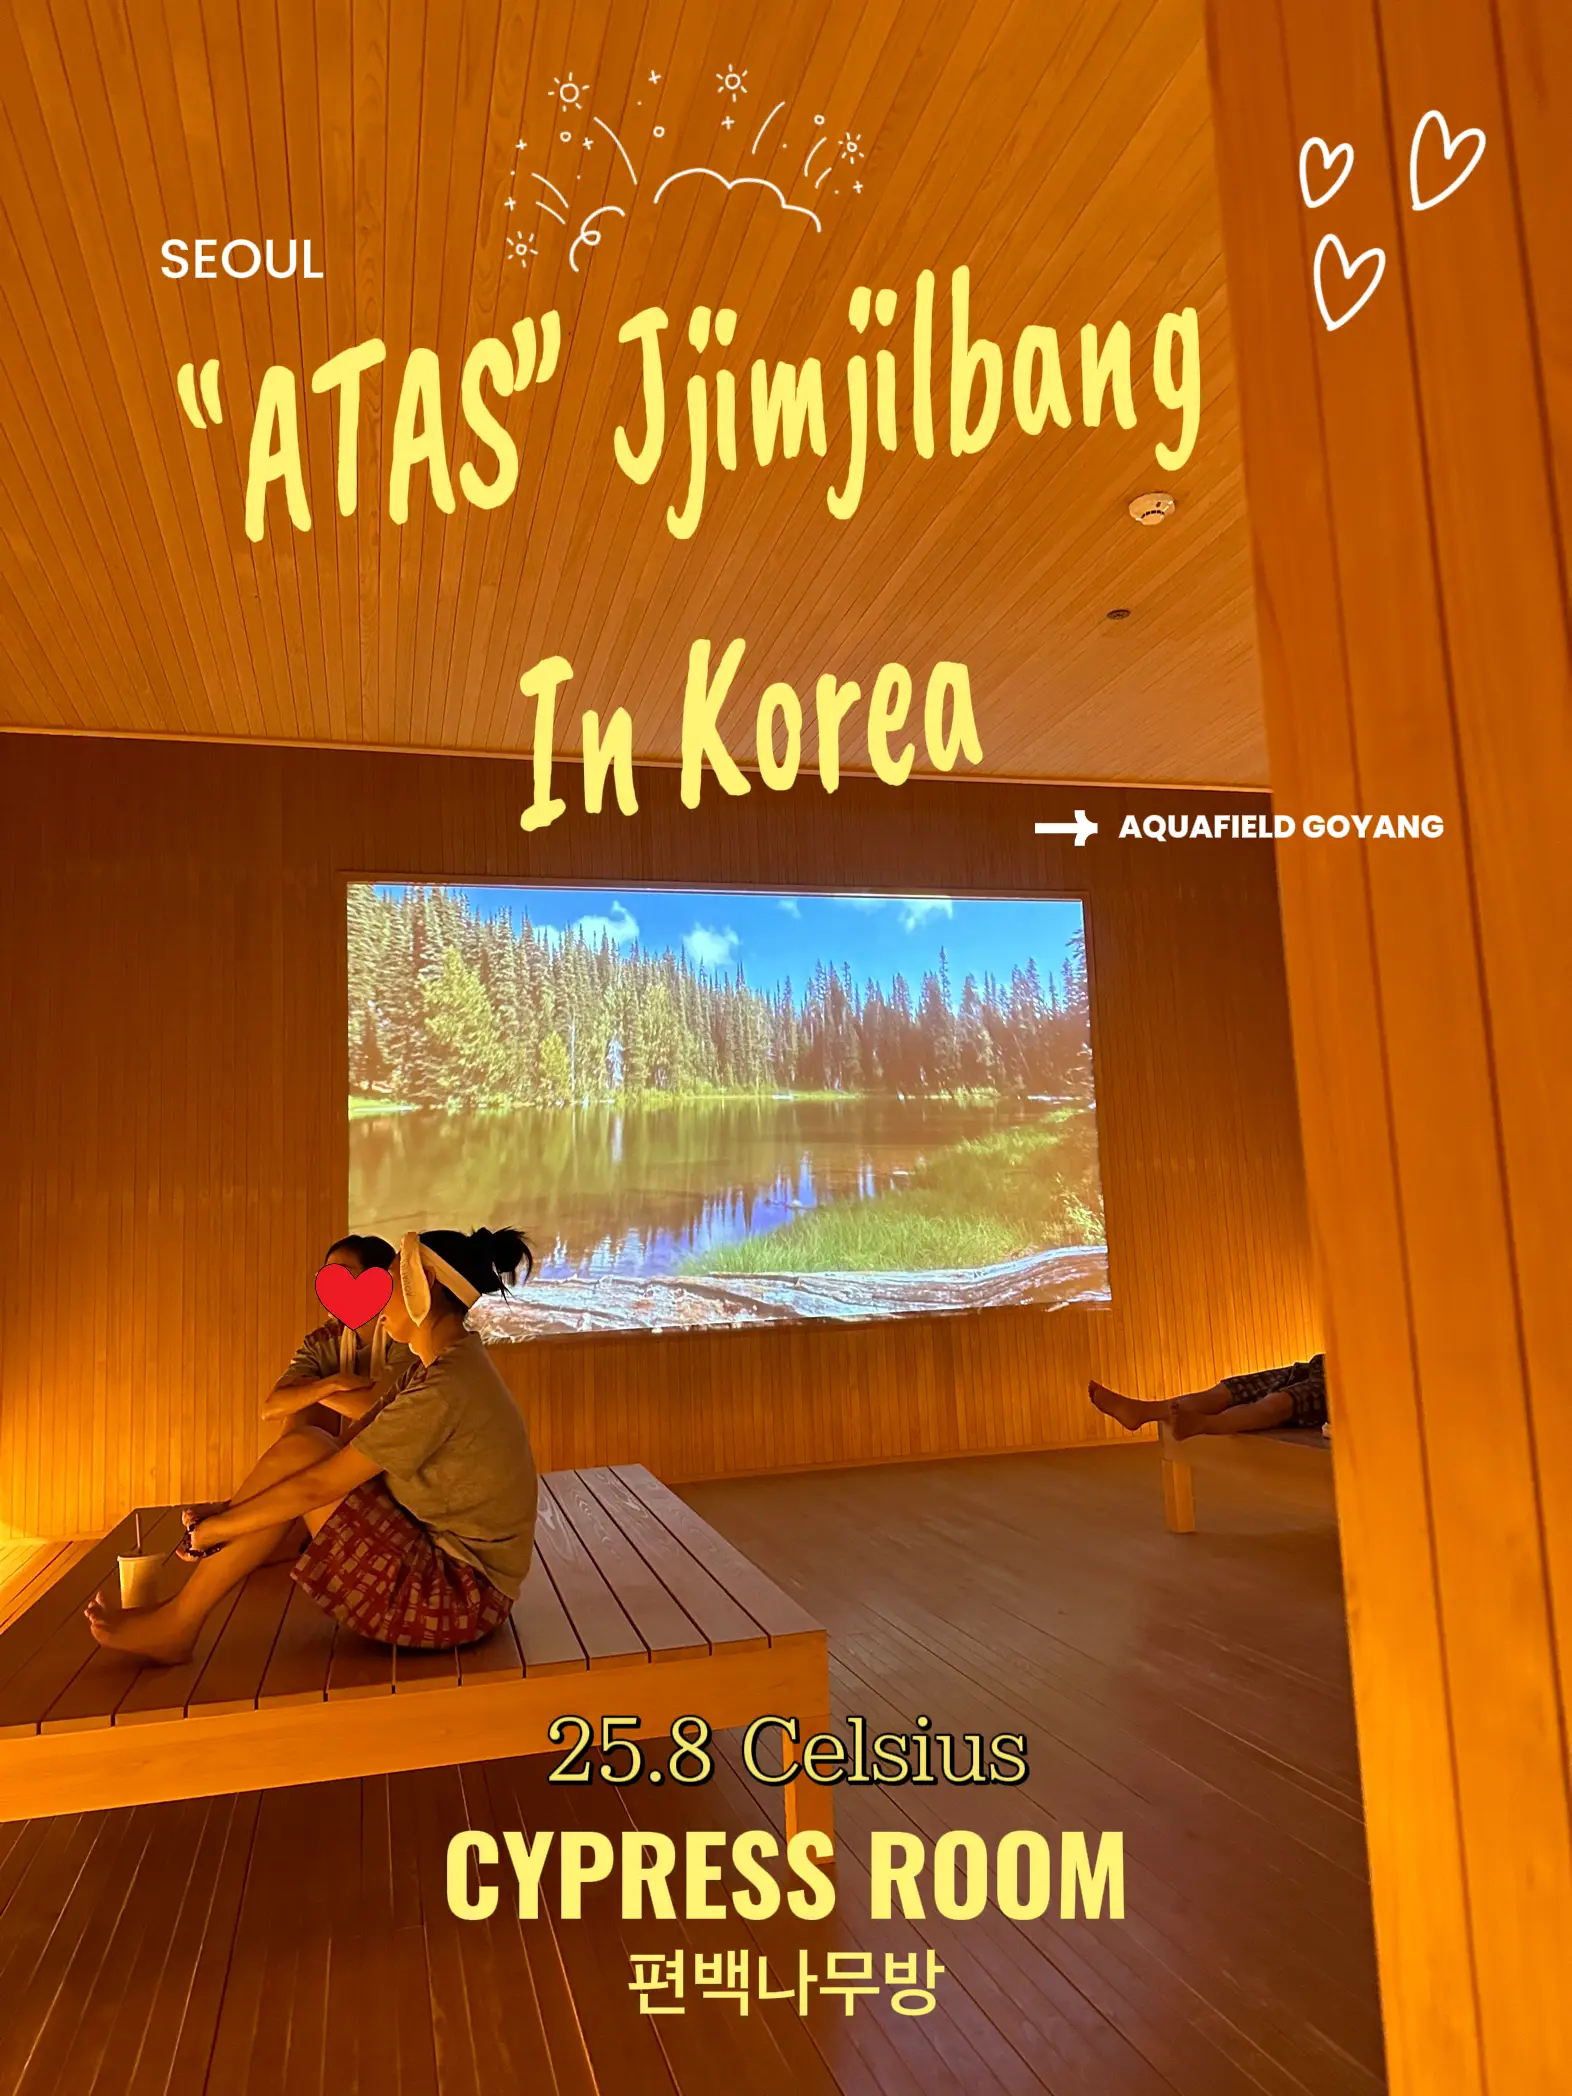 ATAS Jimjilbang In korea for 6 hours @ $17.63⁉️🧖‍♀️'s images(0)